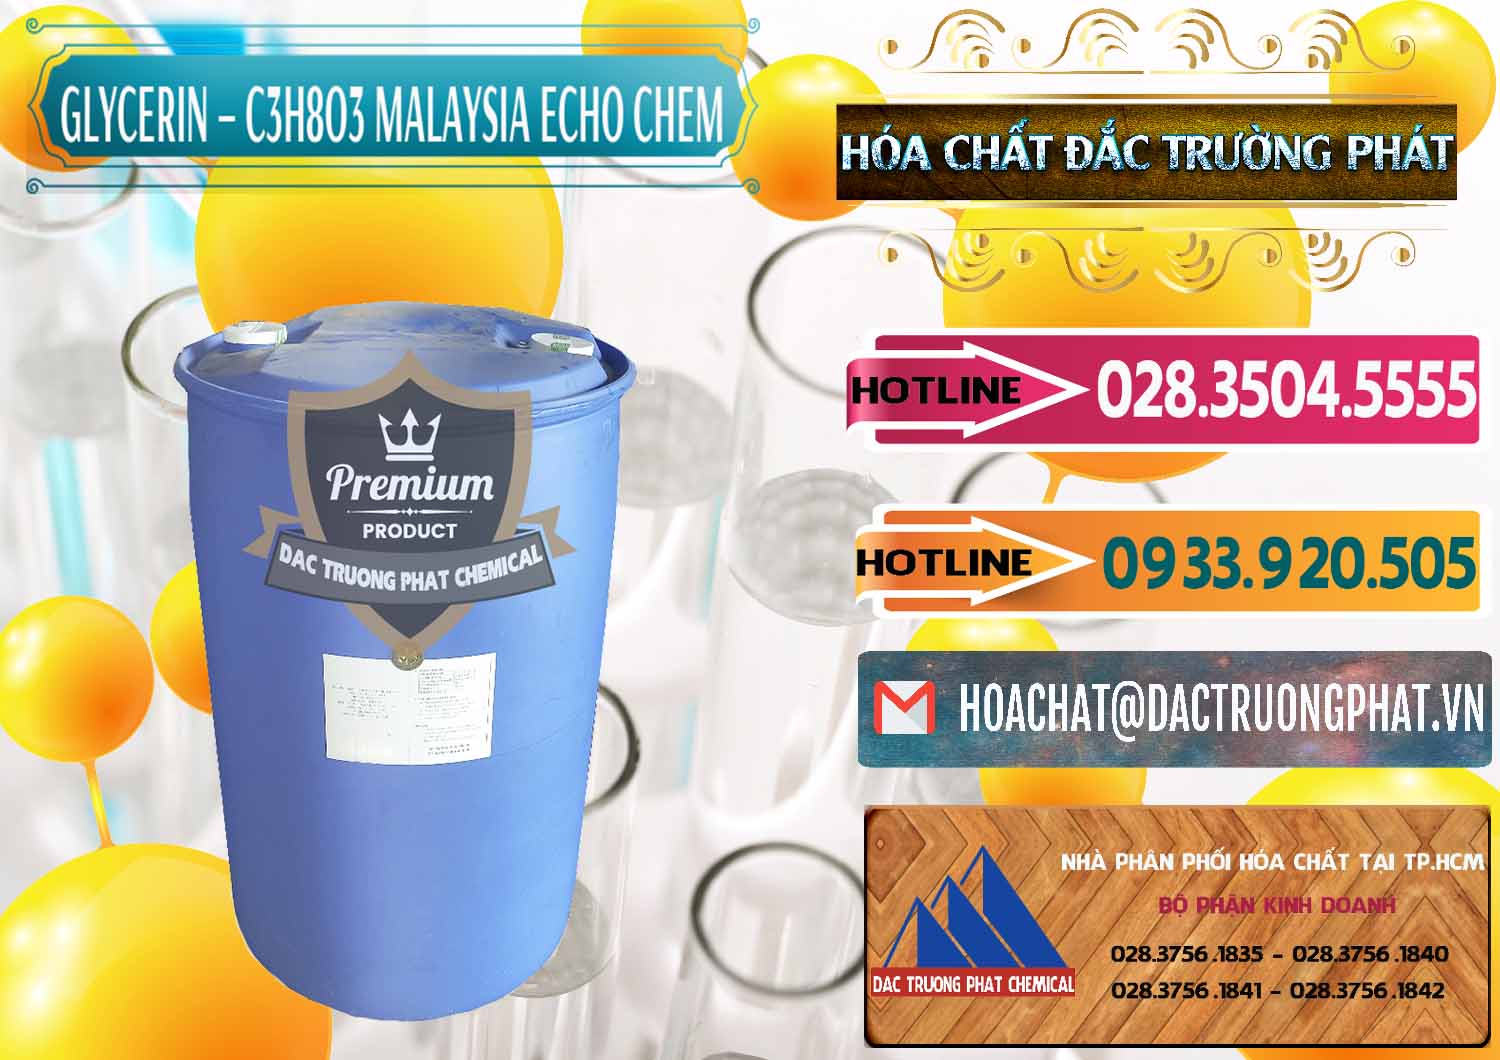 Công ty chuyên phân phối & bán Glycerin – C3H8O3 99.7% Echo Chem Malaysia - 0273 - Công ty chuyên phân phối và bán hóa chất tại TP.HCM - dactruongphat.vn